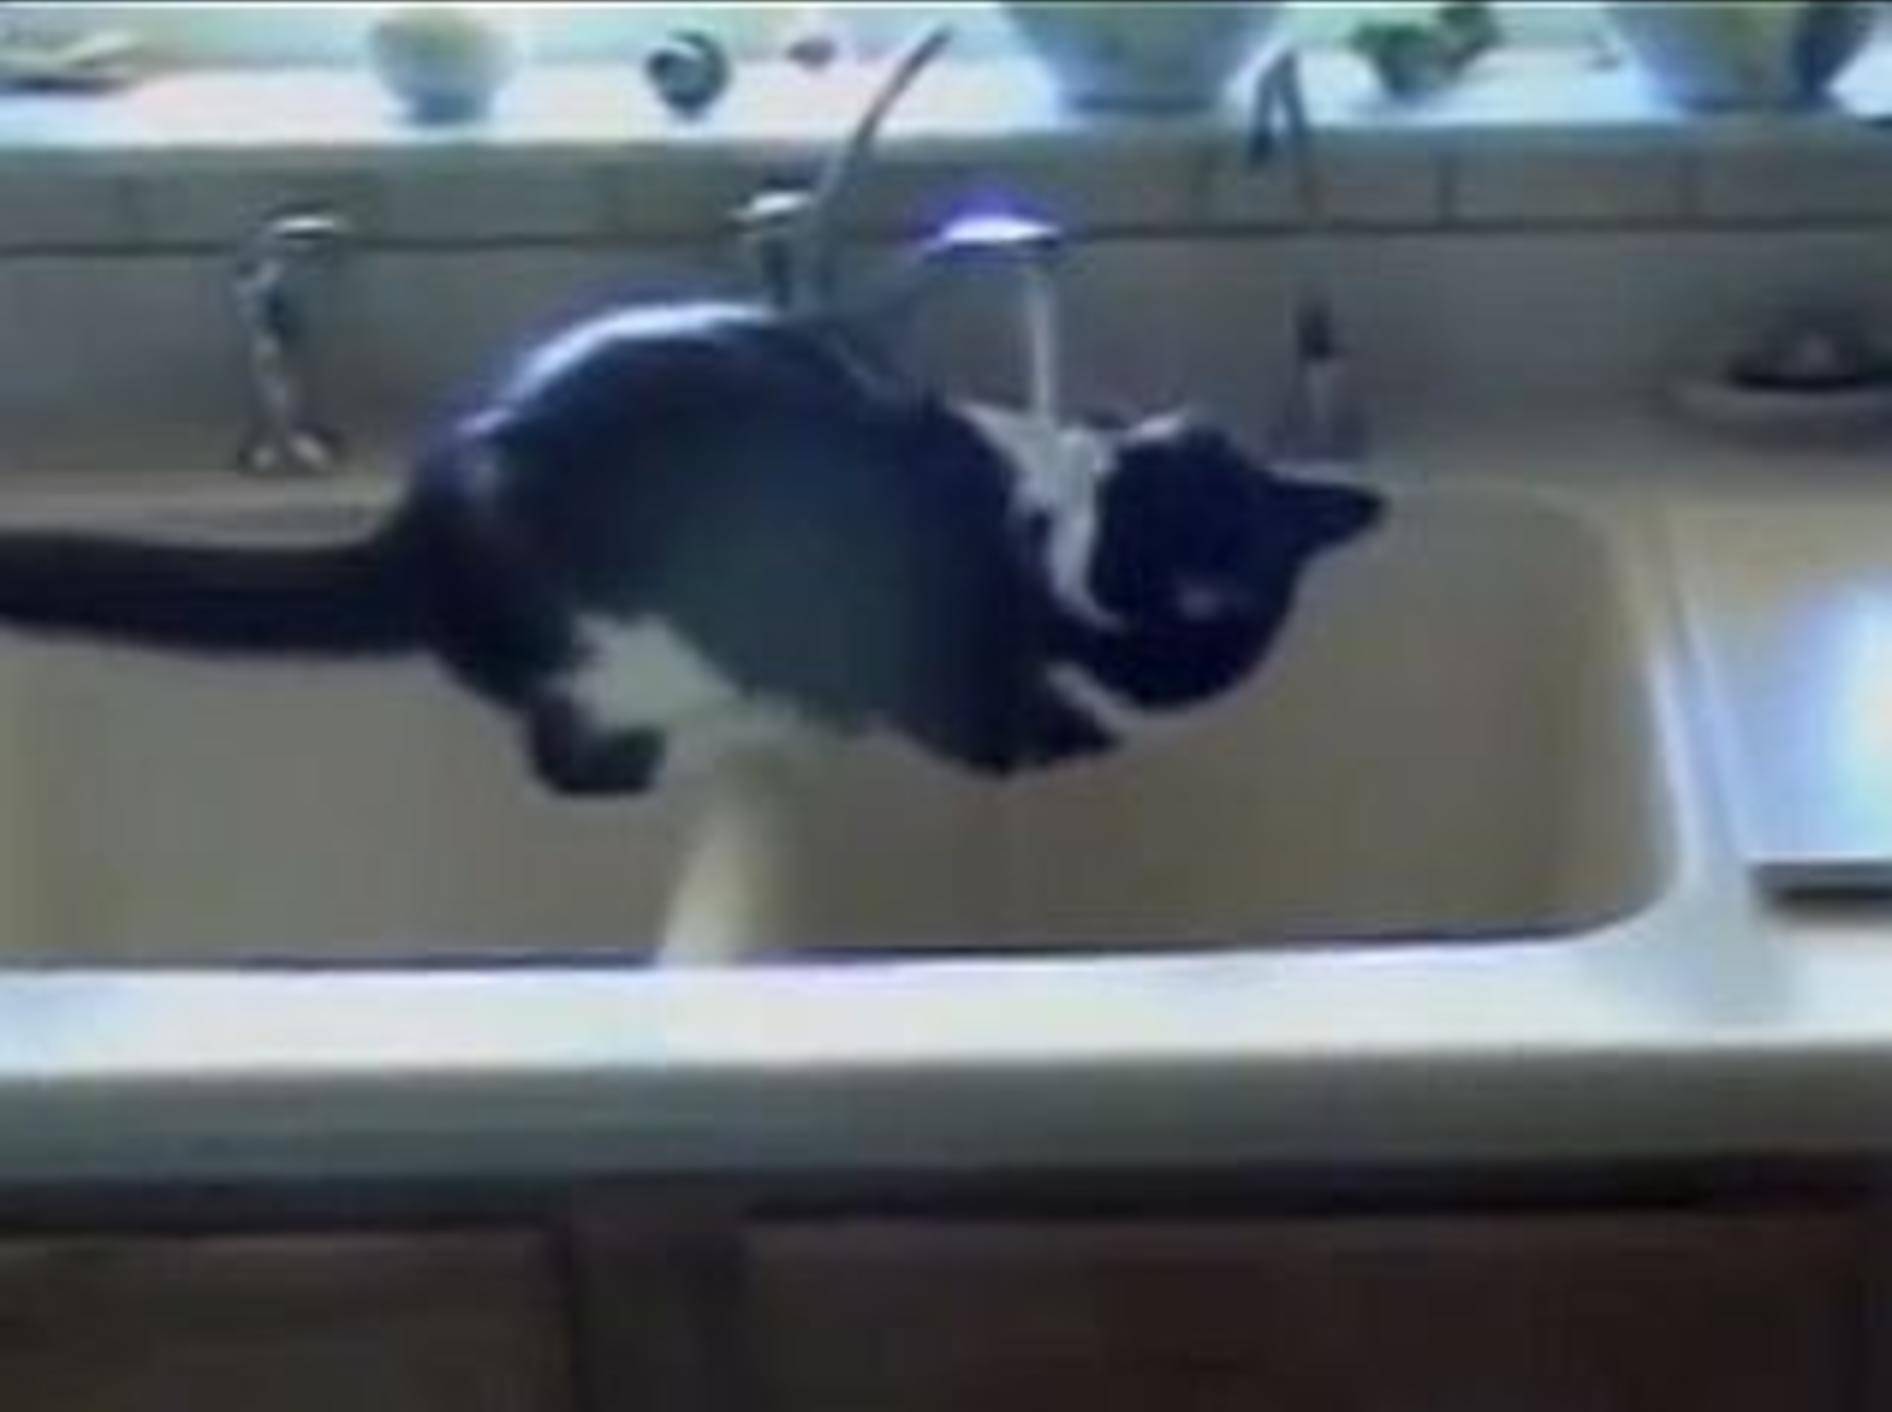 Mutiges Kätzchen hat Wasserspaß im Waschbecken – BIld: Youtube / PetTubedotcom